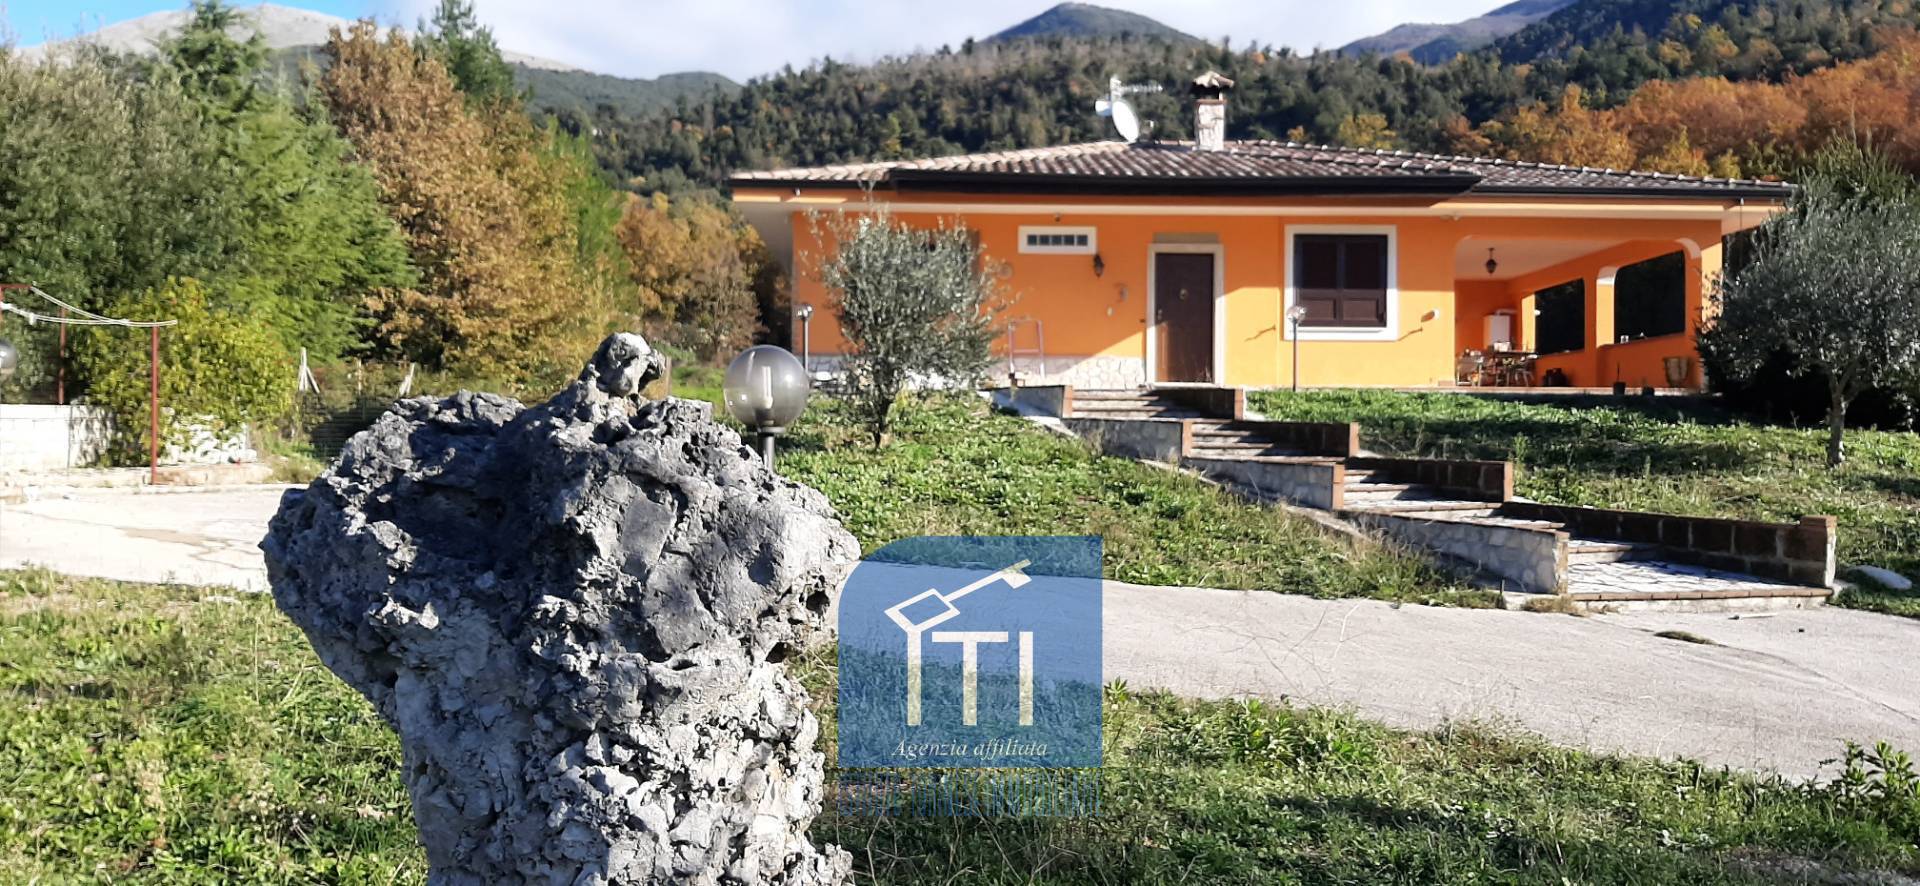 Villa in vendita a Mignano Monte Lungo, 7 locali, prezzo € 275.000 | PortaleAgenzieImmobiliari.it